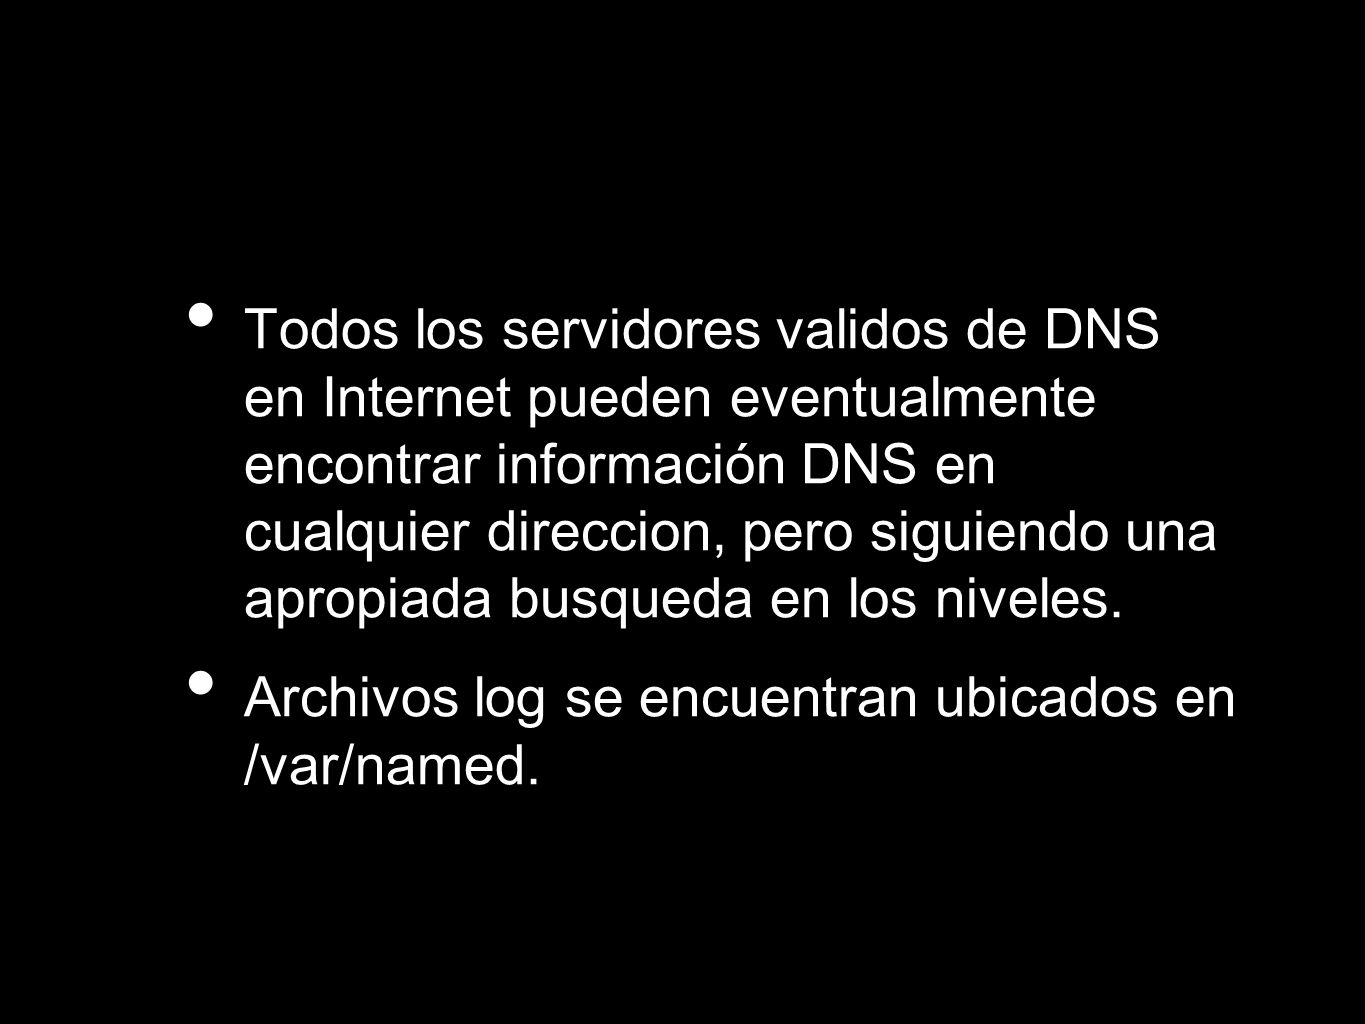 Todos los servidores validos de DNS en Internet pueden eventualmente encontrar información DNS en cualquier direccion, pero siguiendo una apropiada busqueda en los niveles.